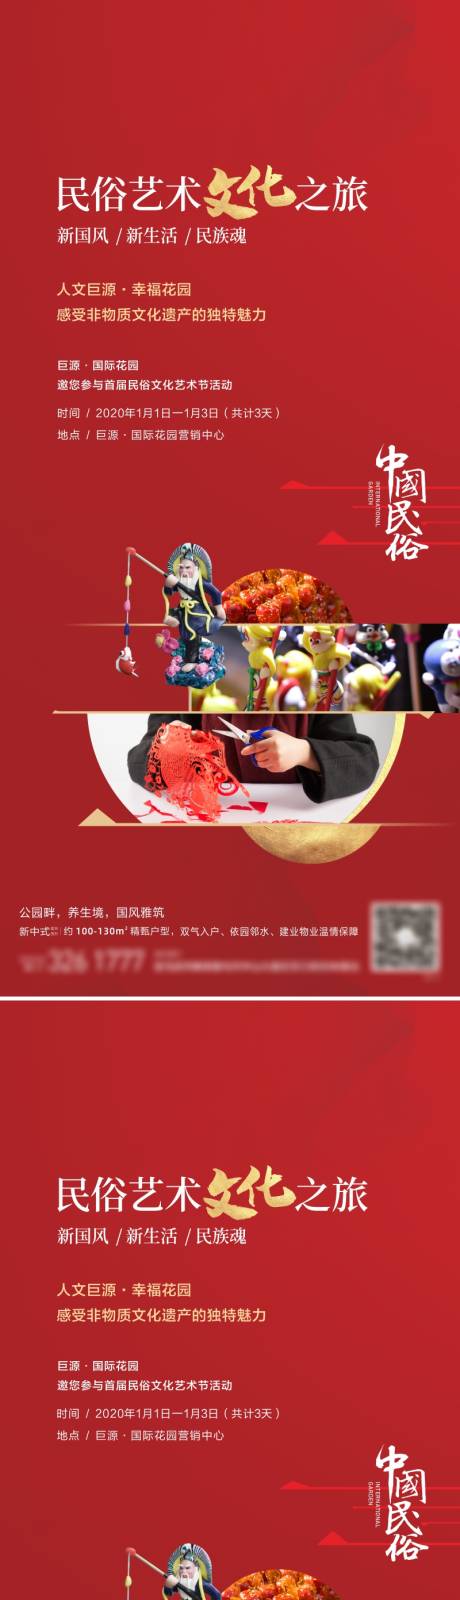 地产民俗文化节海报系列